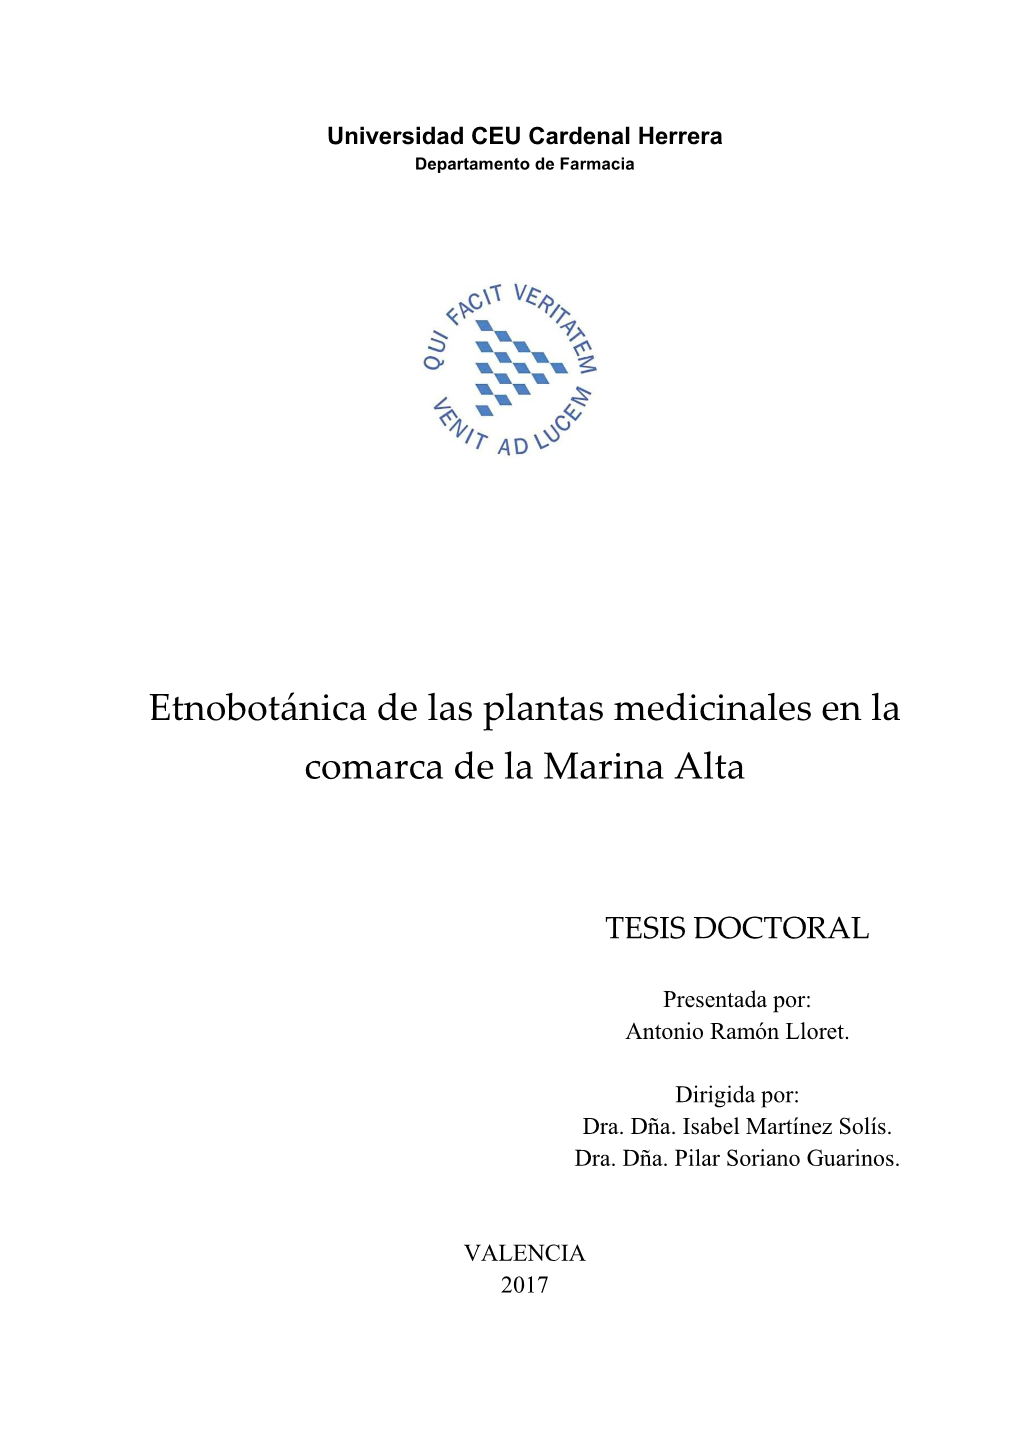 Etnobotánica De Las Plantas Medicinales En La Comarca De La Marina Alta